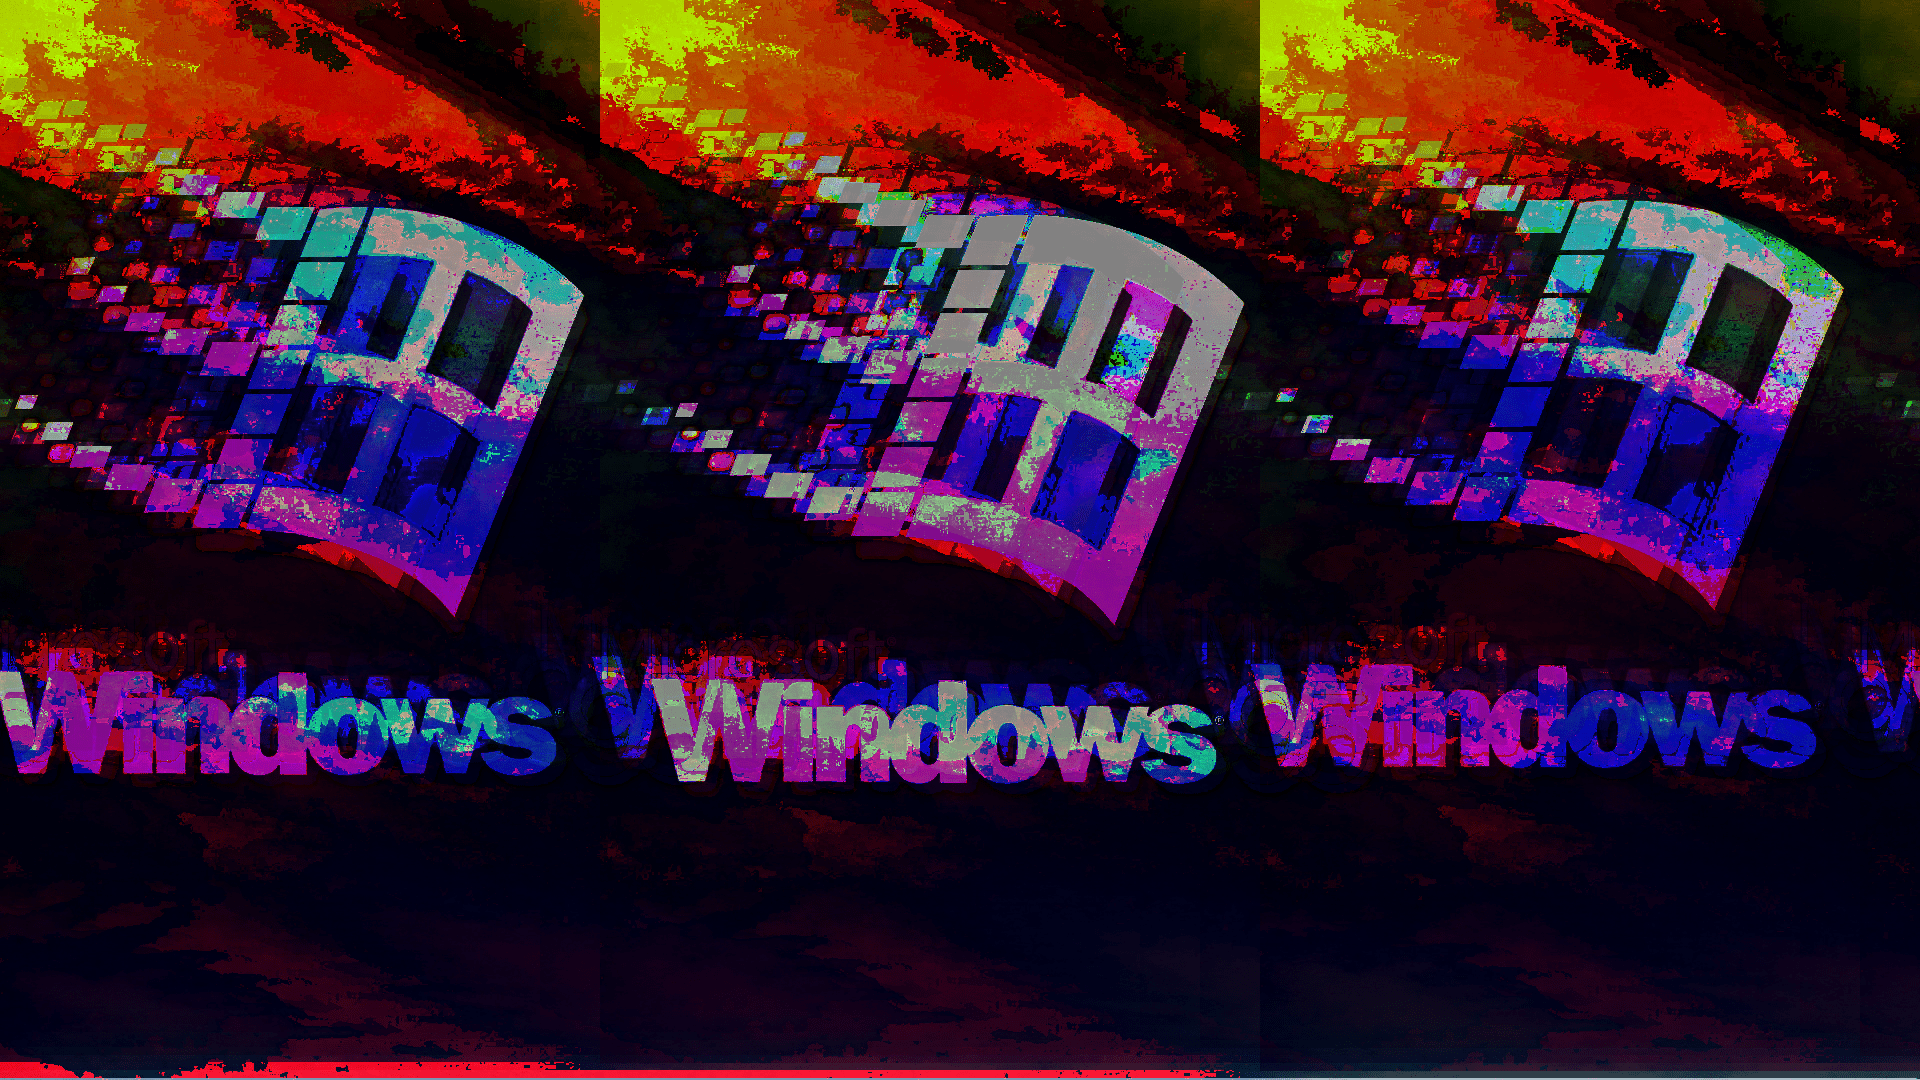 Windows 8 wallpaper, Windows 8, 1920x1200 wallpaper, 1920x1200, Windows 8, colorful, abstract, 1920x1200 wallpaper, 1920x1200, colorful, abstract - Windows 95